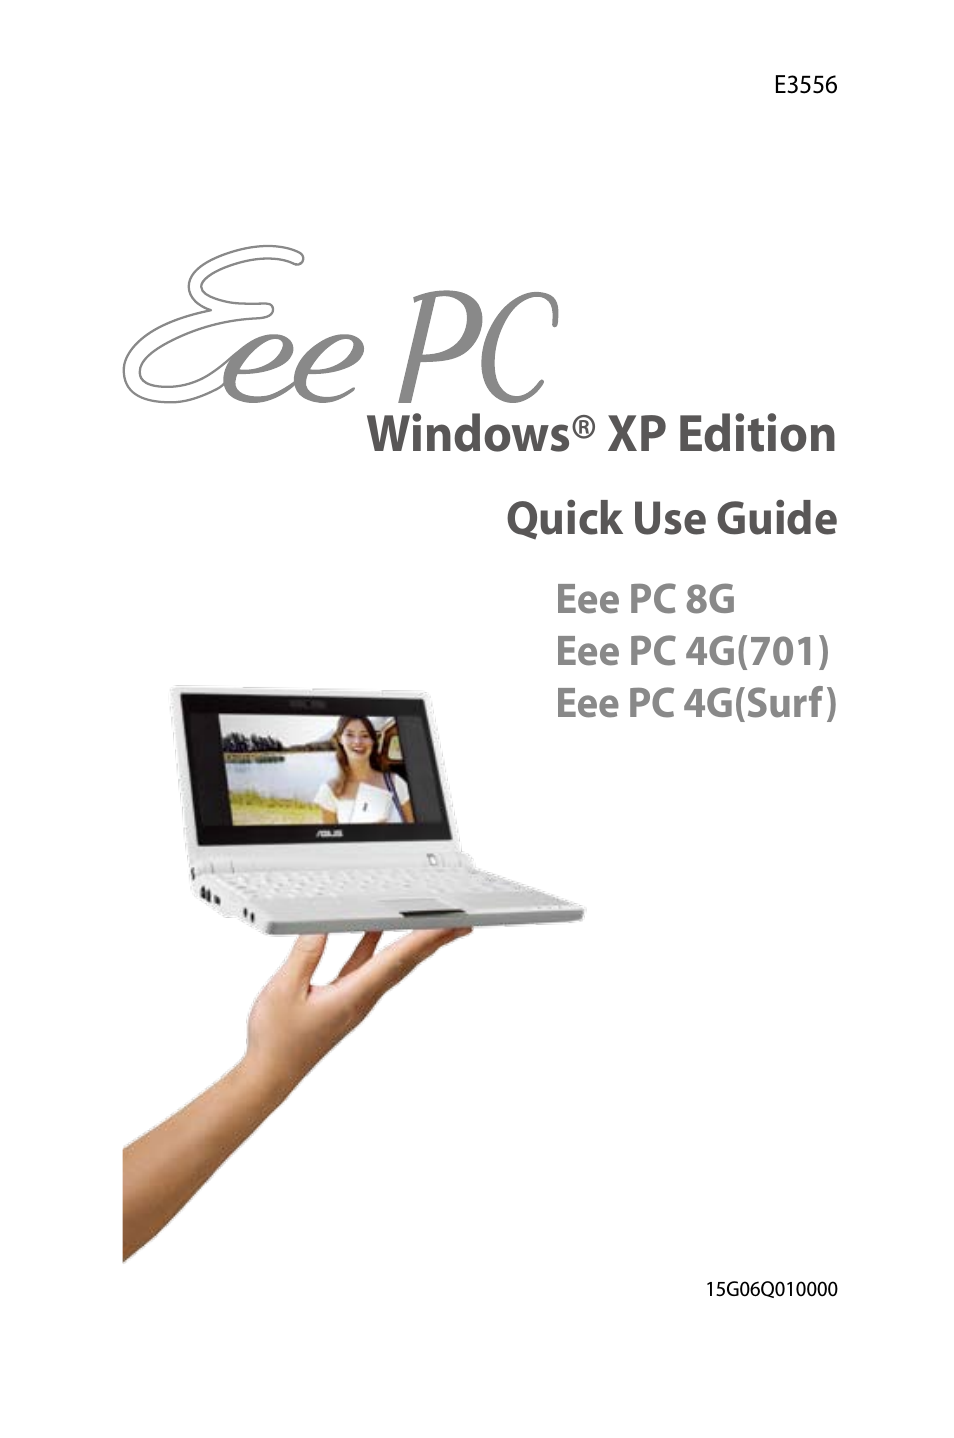 Eee PC 4G Surf/XP